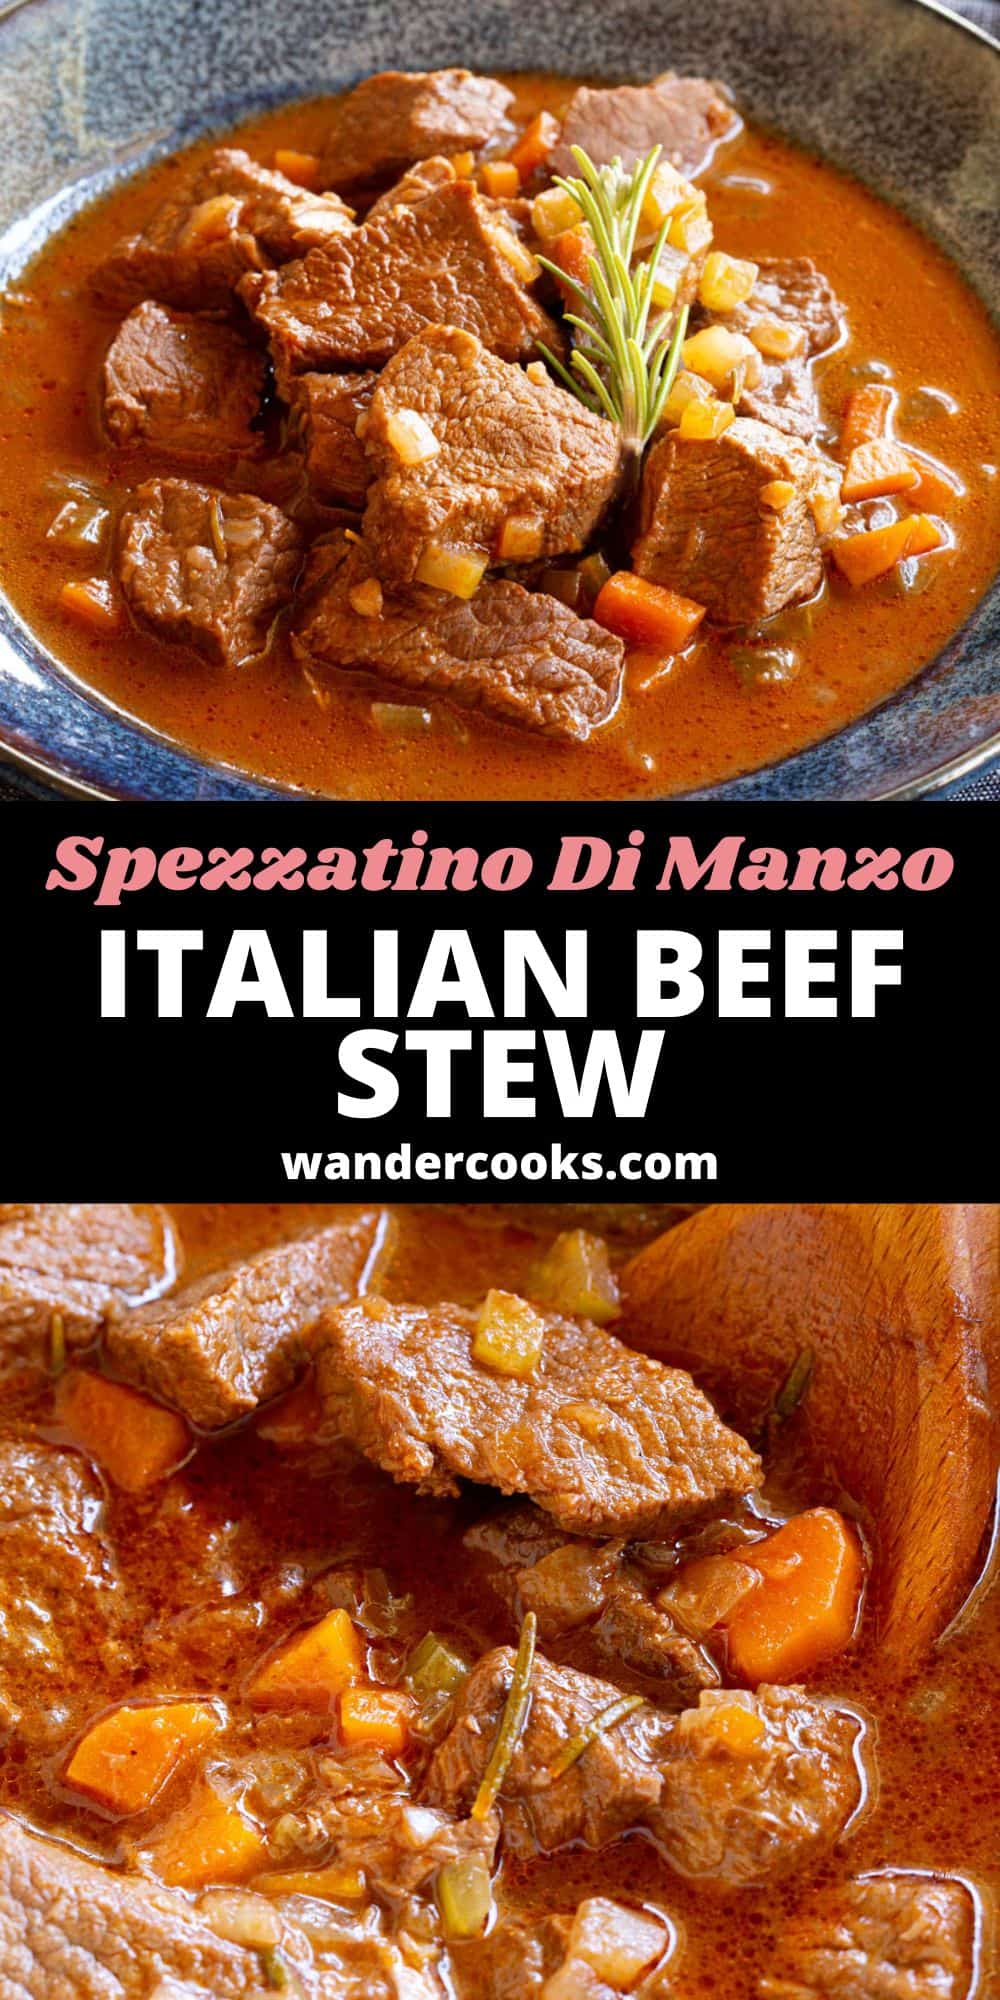 Italian Beef Stew - Spezzatino di Manzo